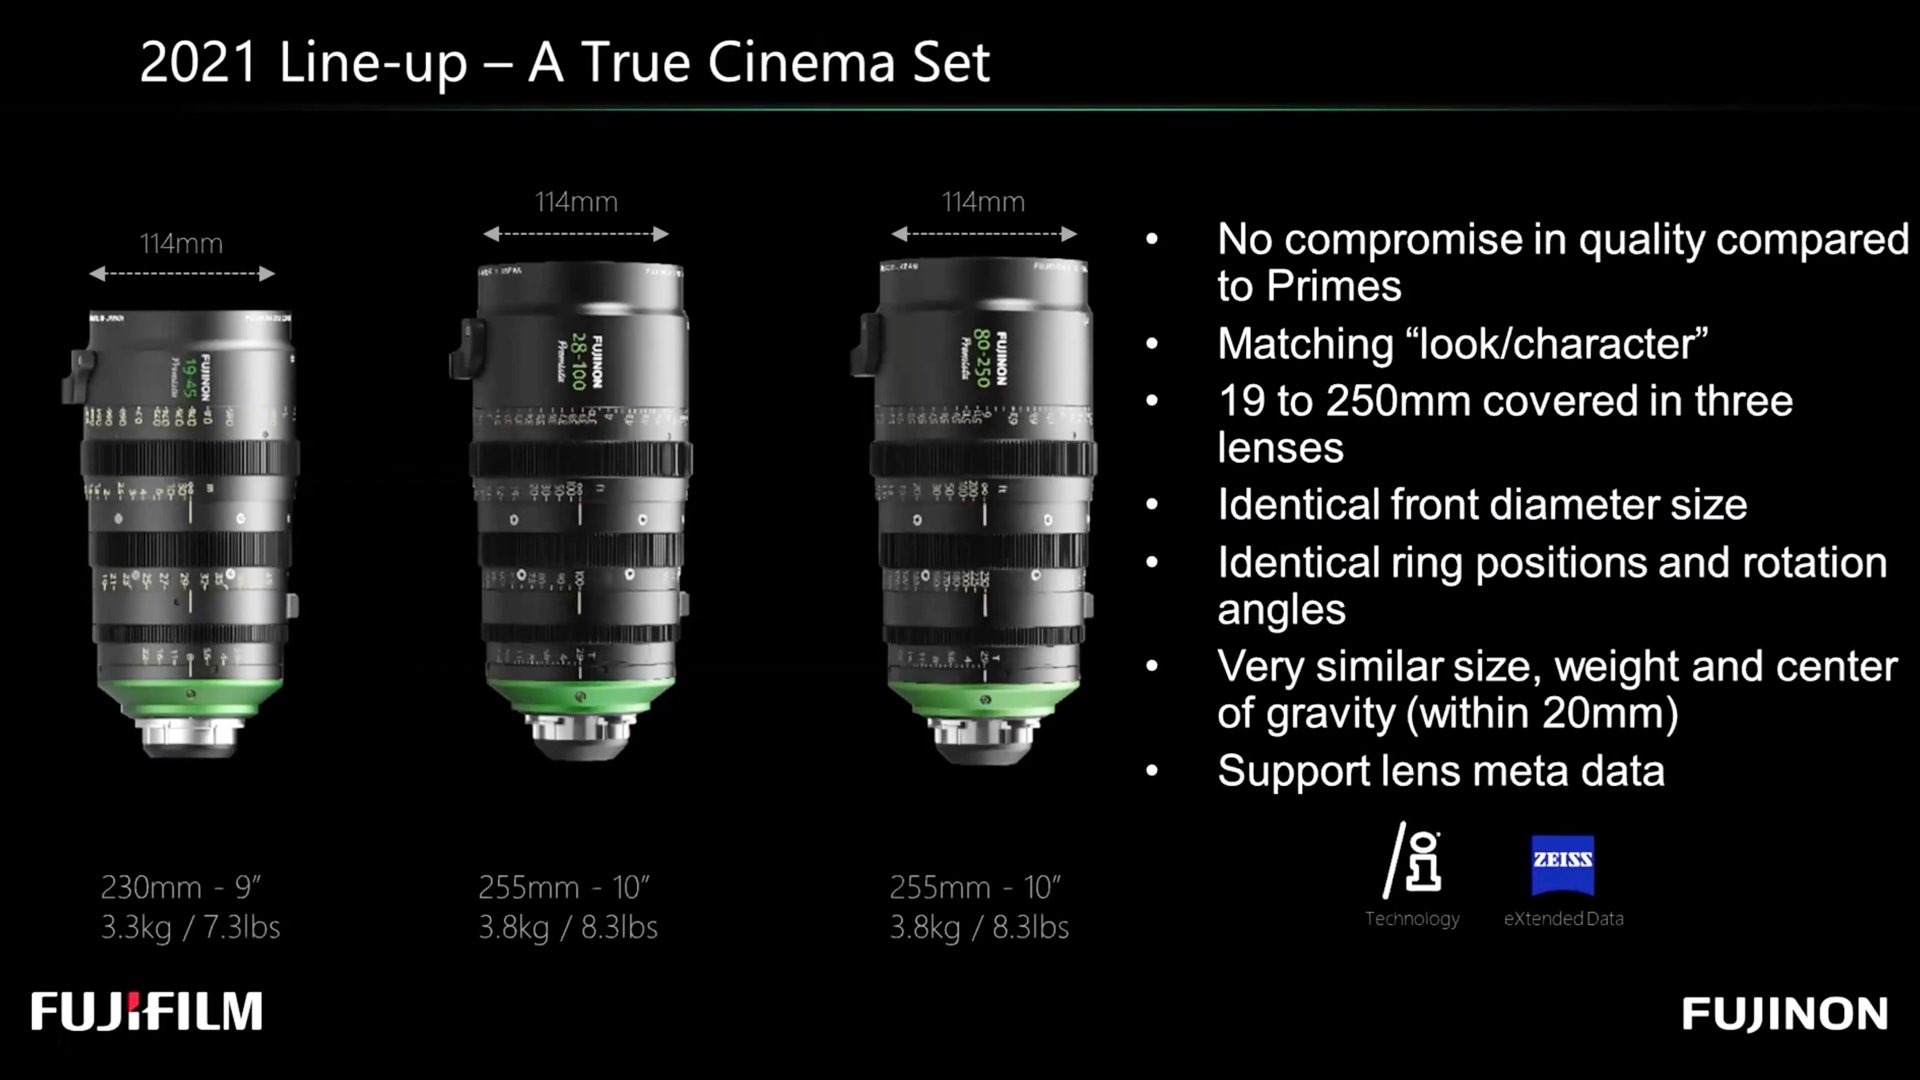 The Fujinon Premista: Digital Cinema Society Lens 2021 event slide.